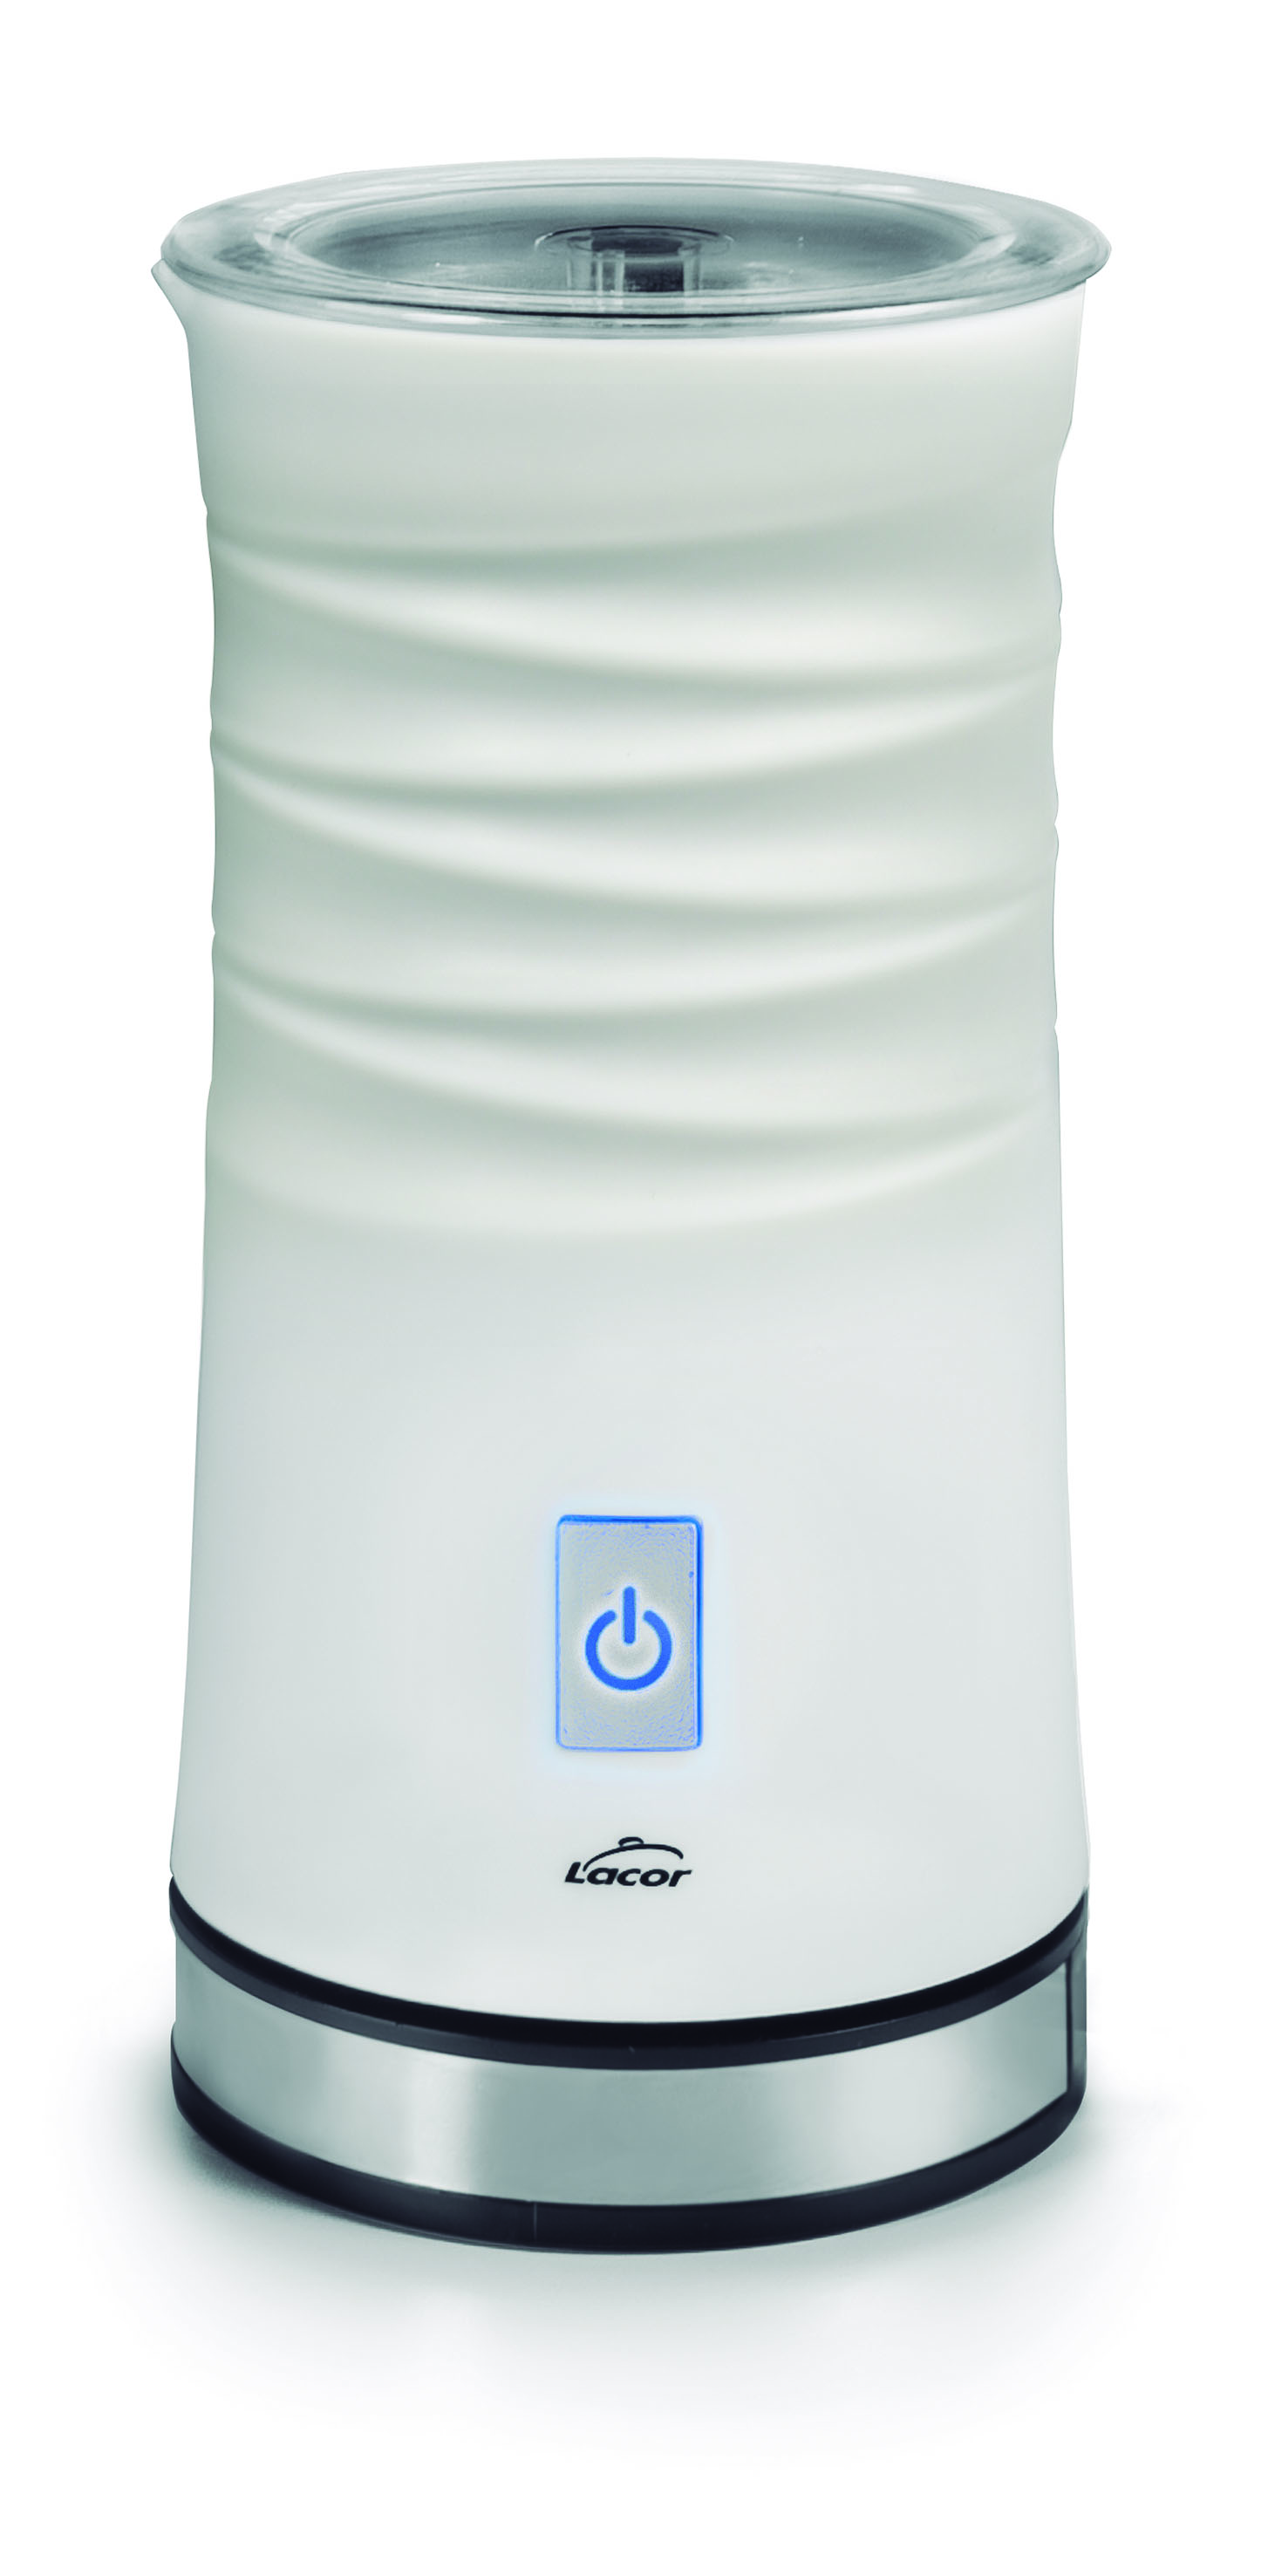 Espumador de leche eléctrico, fabricante automático de espuma de leche para  café Matcha Leyfeng fabricante de espuma